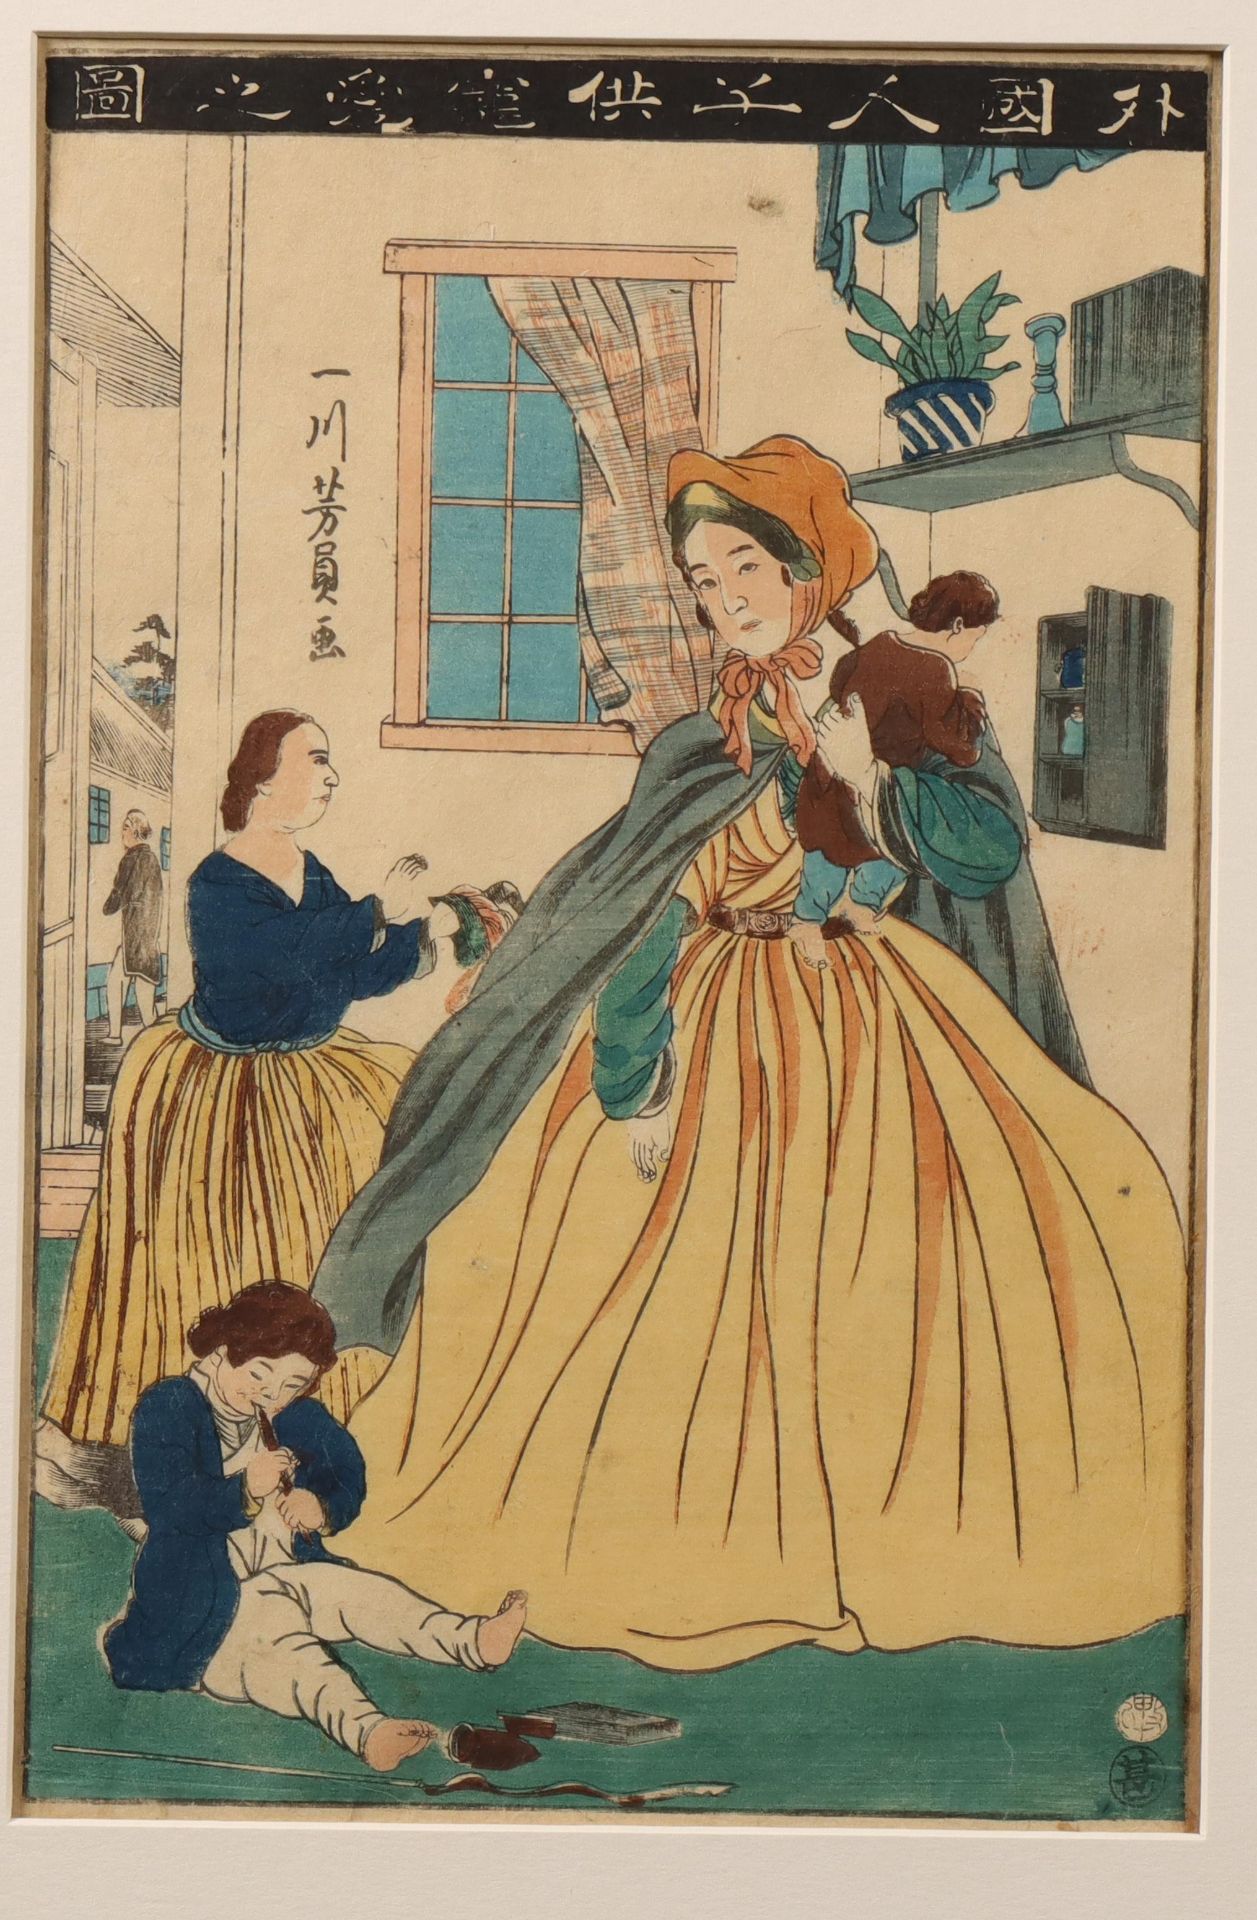 Japan, woodblock print by Utagawa Yoshikazu (act. 1850-1870),